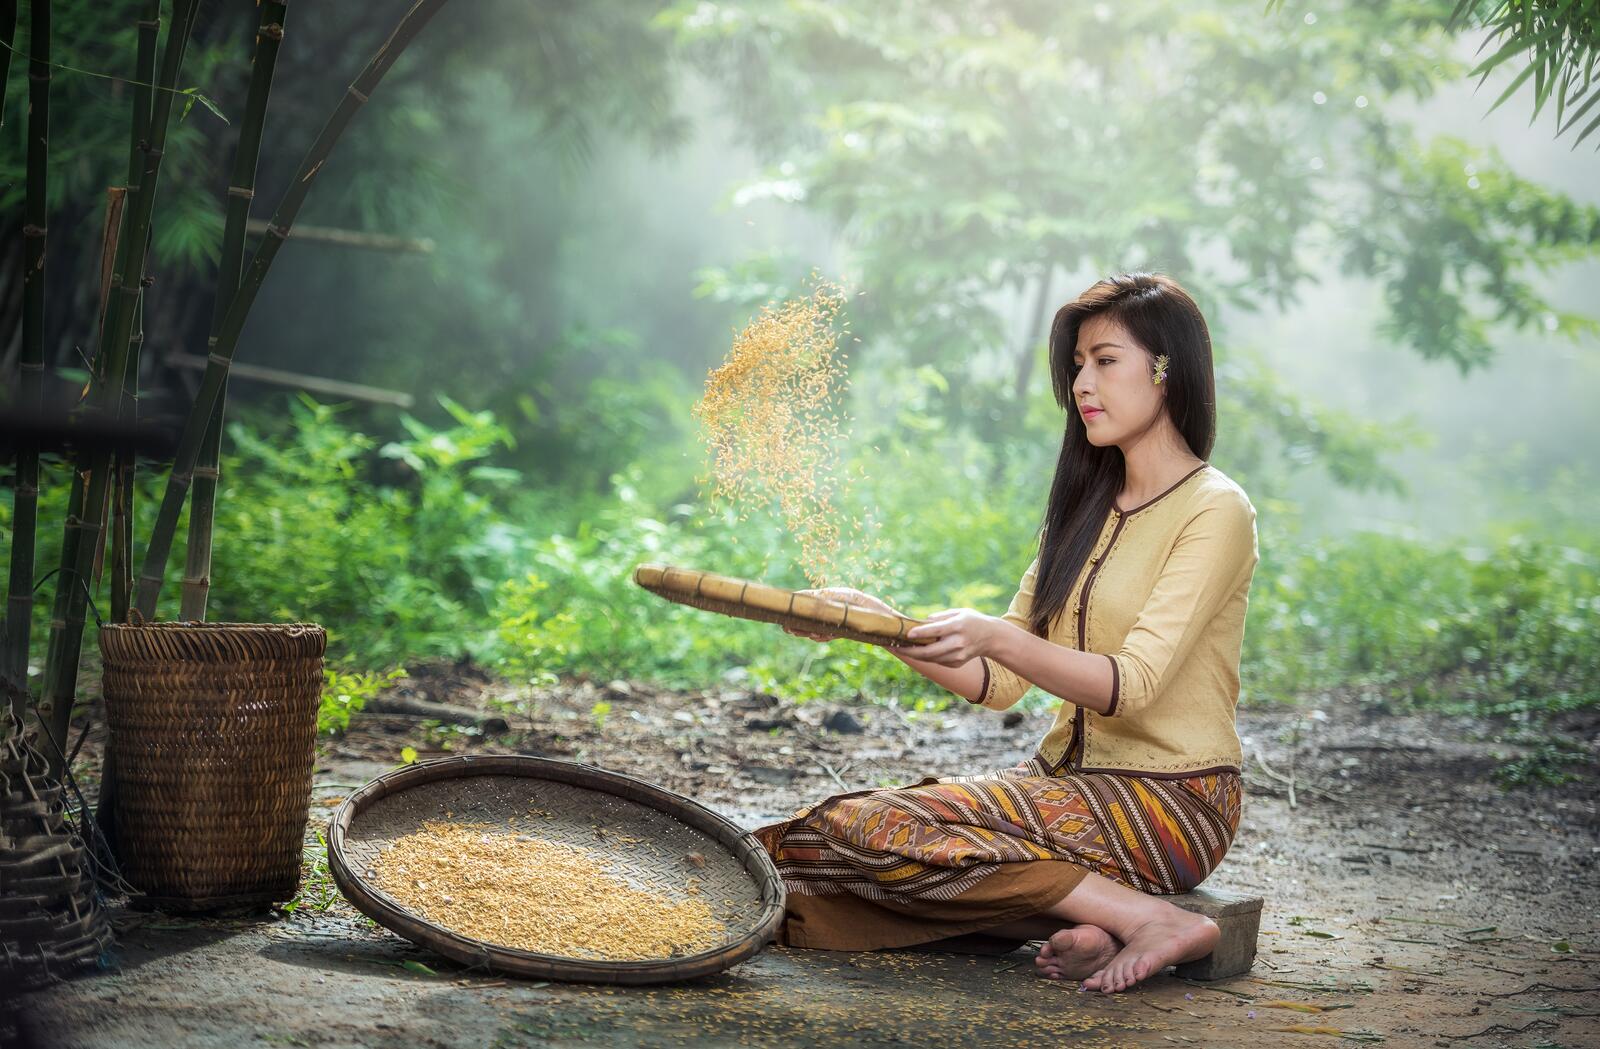 Free photo A Thai girl strains grains in a sieve.